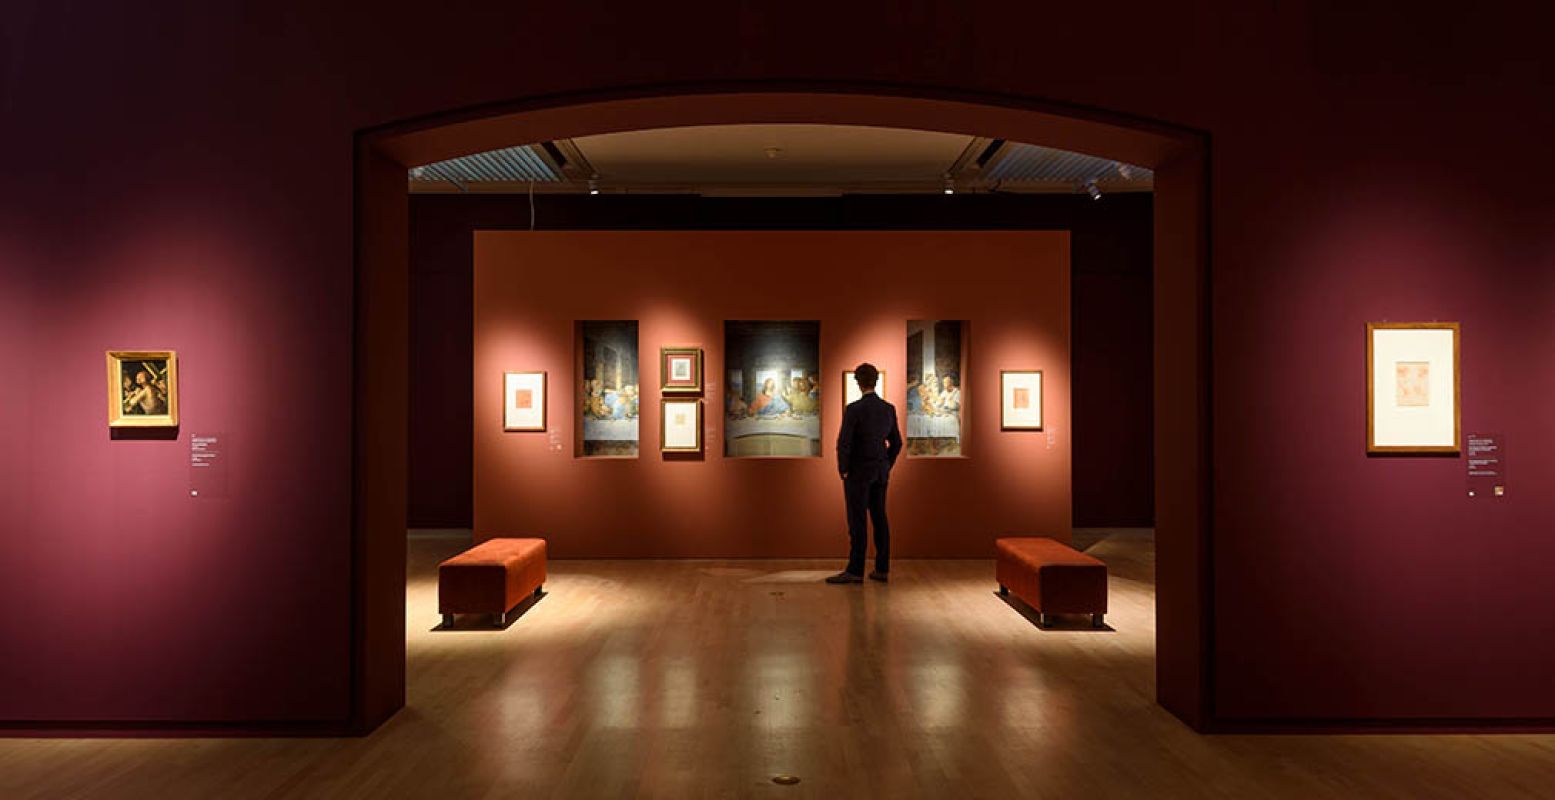 De schetsen en portretten van Leonardo da Vinci komen goed tot hun recht in deze mooie zaal van Teylers Museum. Recht vooruit zie je stukken uit Het Laatste Avondmaal, met daarnaast voorstudies van Da Vinci voor enkele van de apostelen in dit beroemde werk. Foto: Teylers Museum